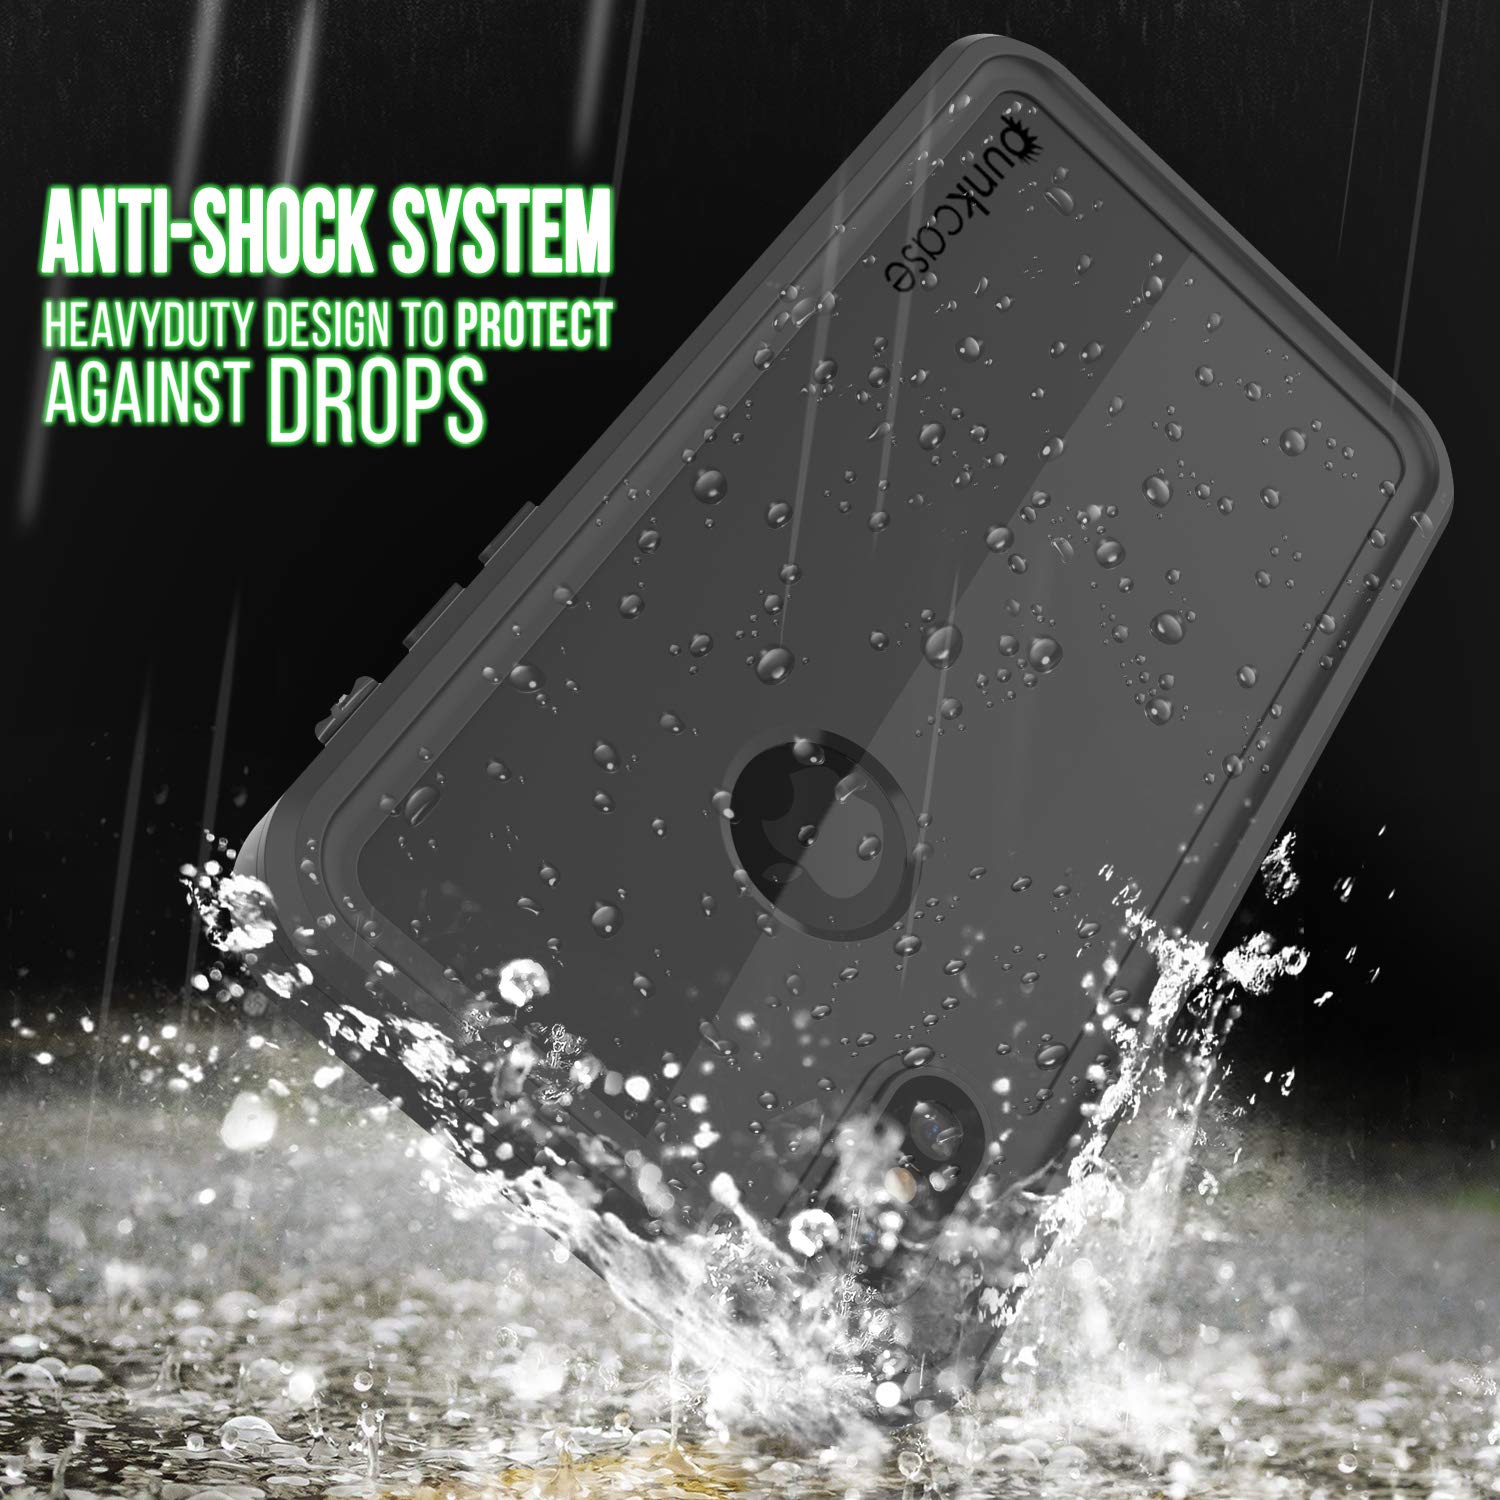 iPhone XS Max Waterproof IP68 Case, Punkcase [Black] [StudStar Series] [Slim Fit] [Dirtproof]